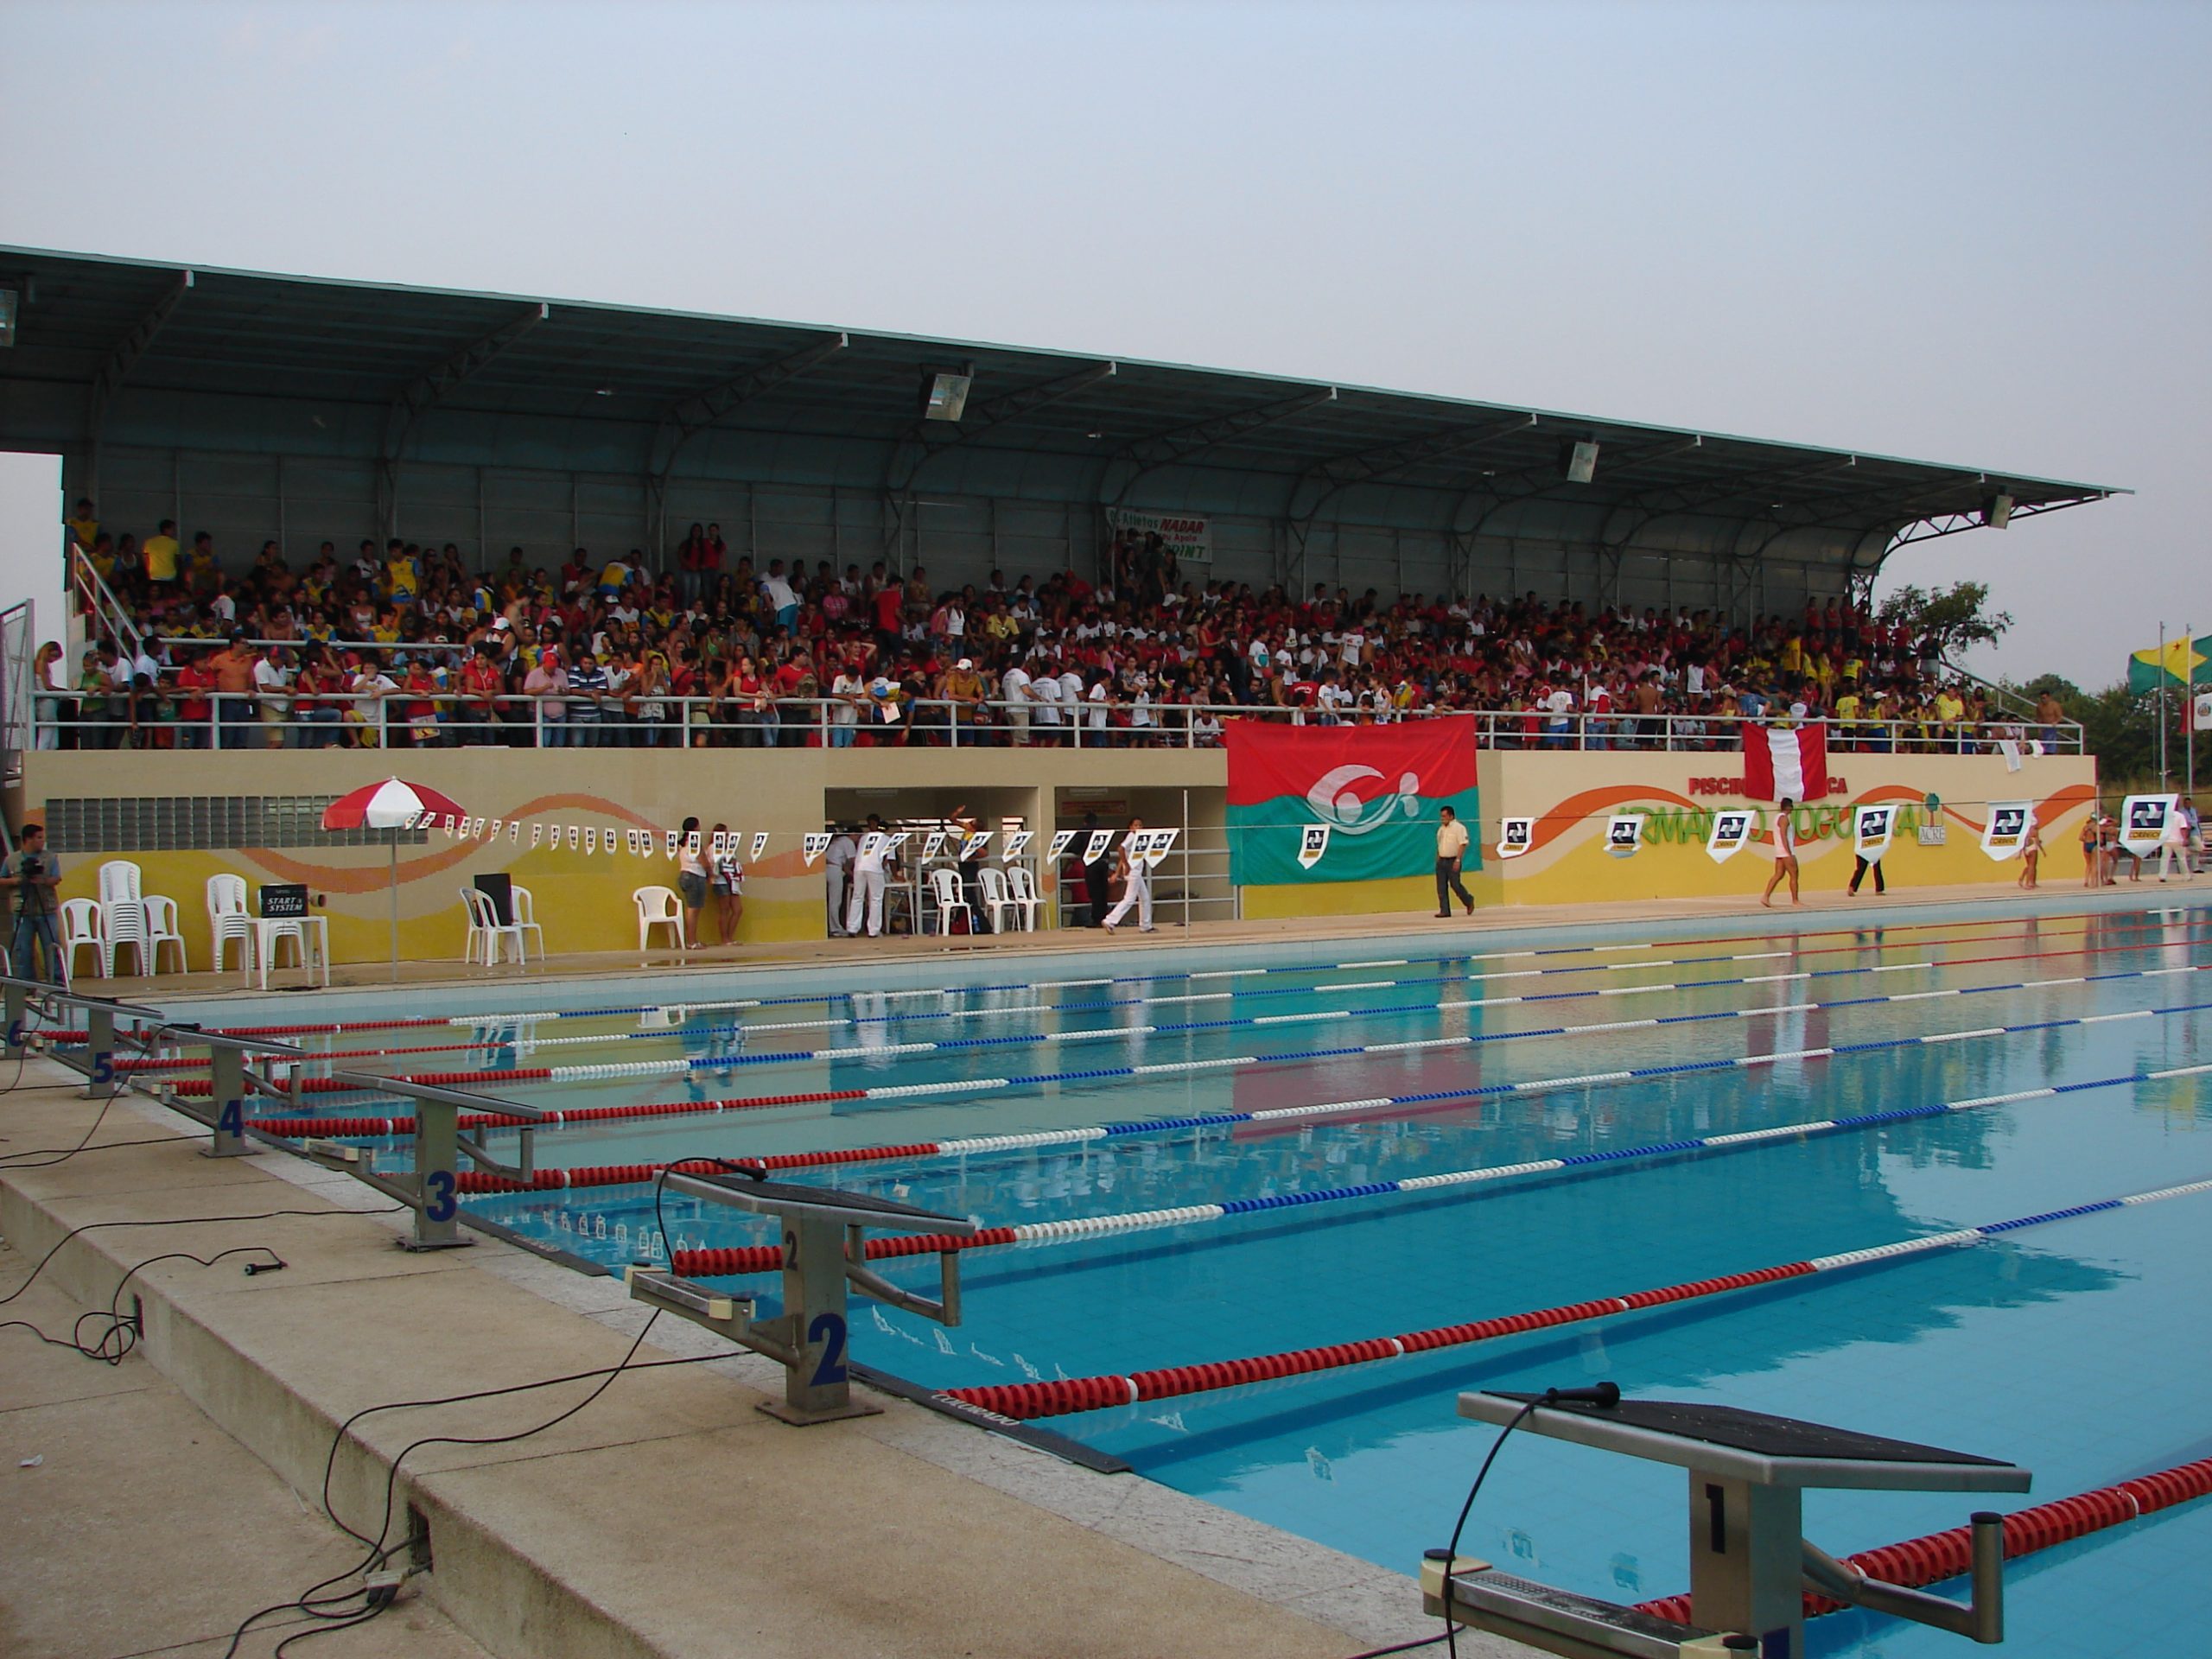 Salve a piscina olímpica Armando Nogueira